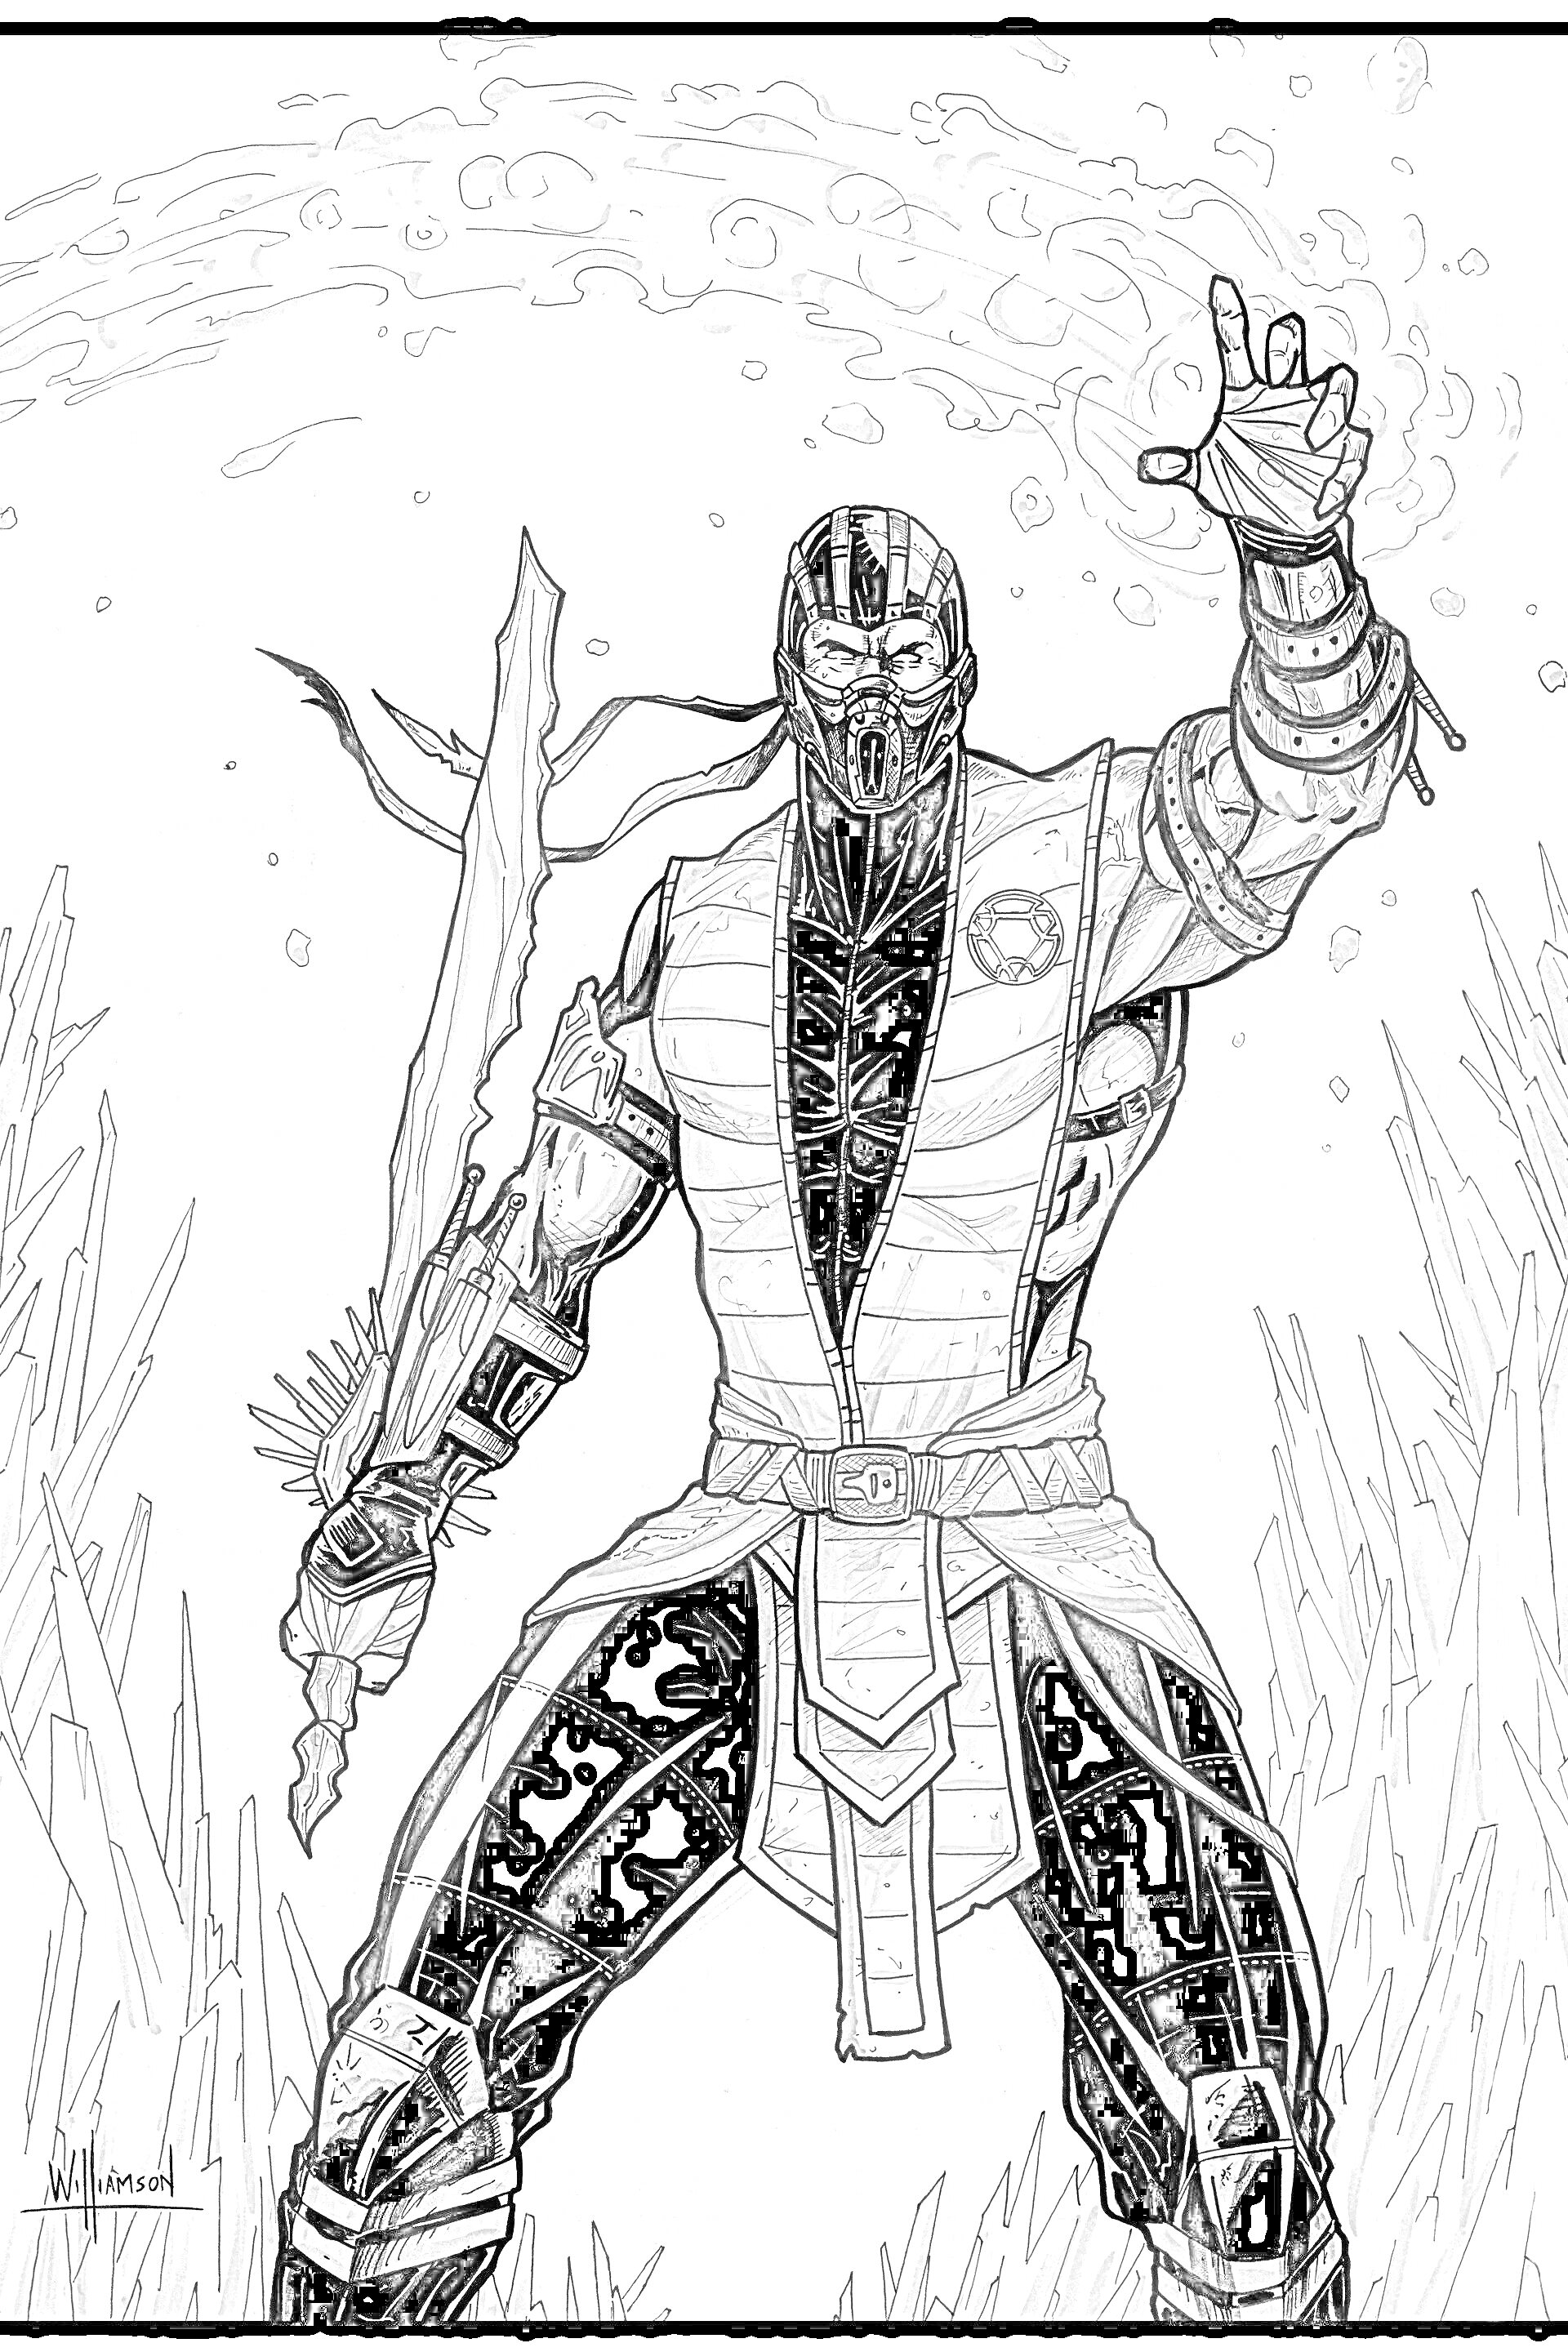 Раскраска Нуб Сайбот из игры Mortal Kombat 11 с поднятой рукой, мечем в другой руке и фоном с ледяными шипами